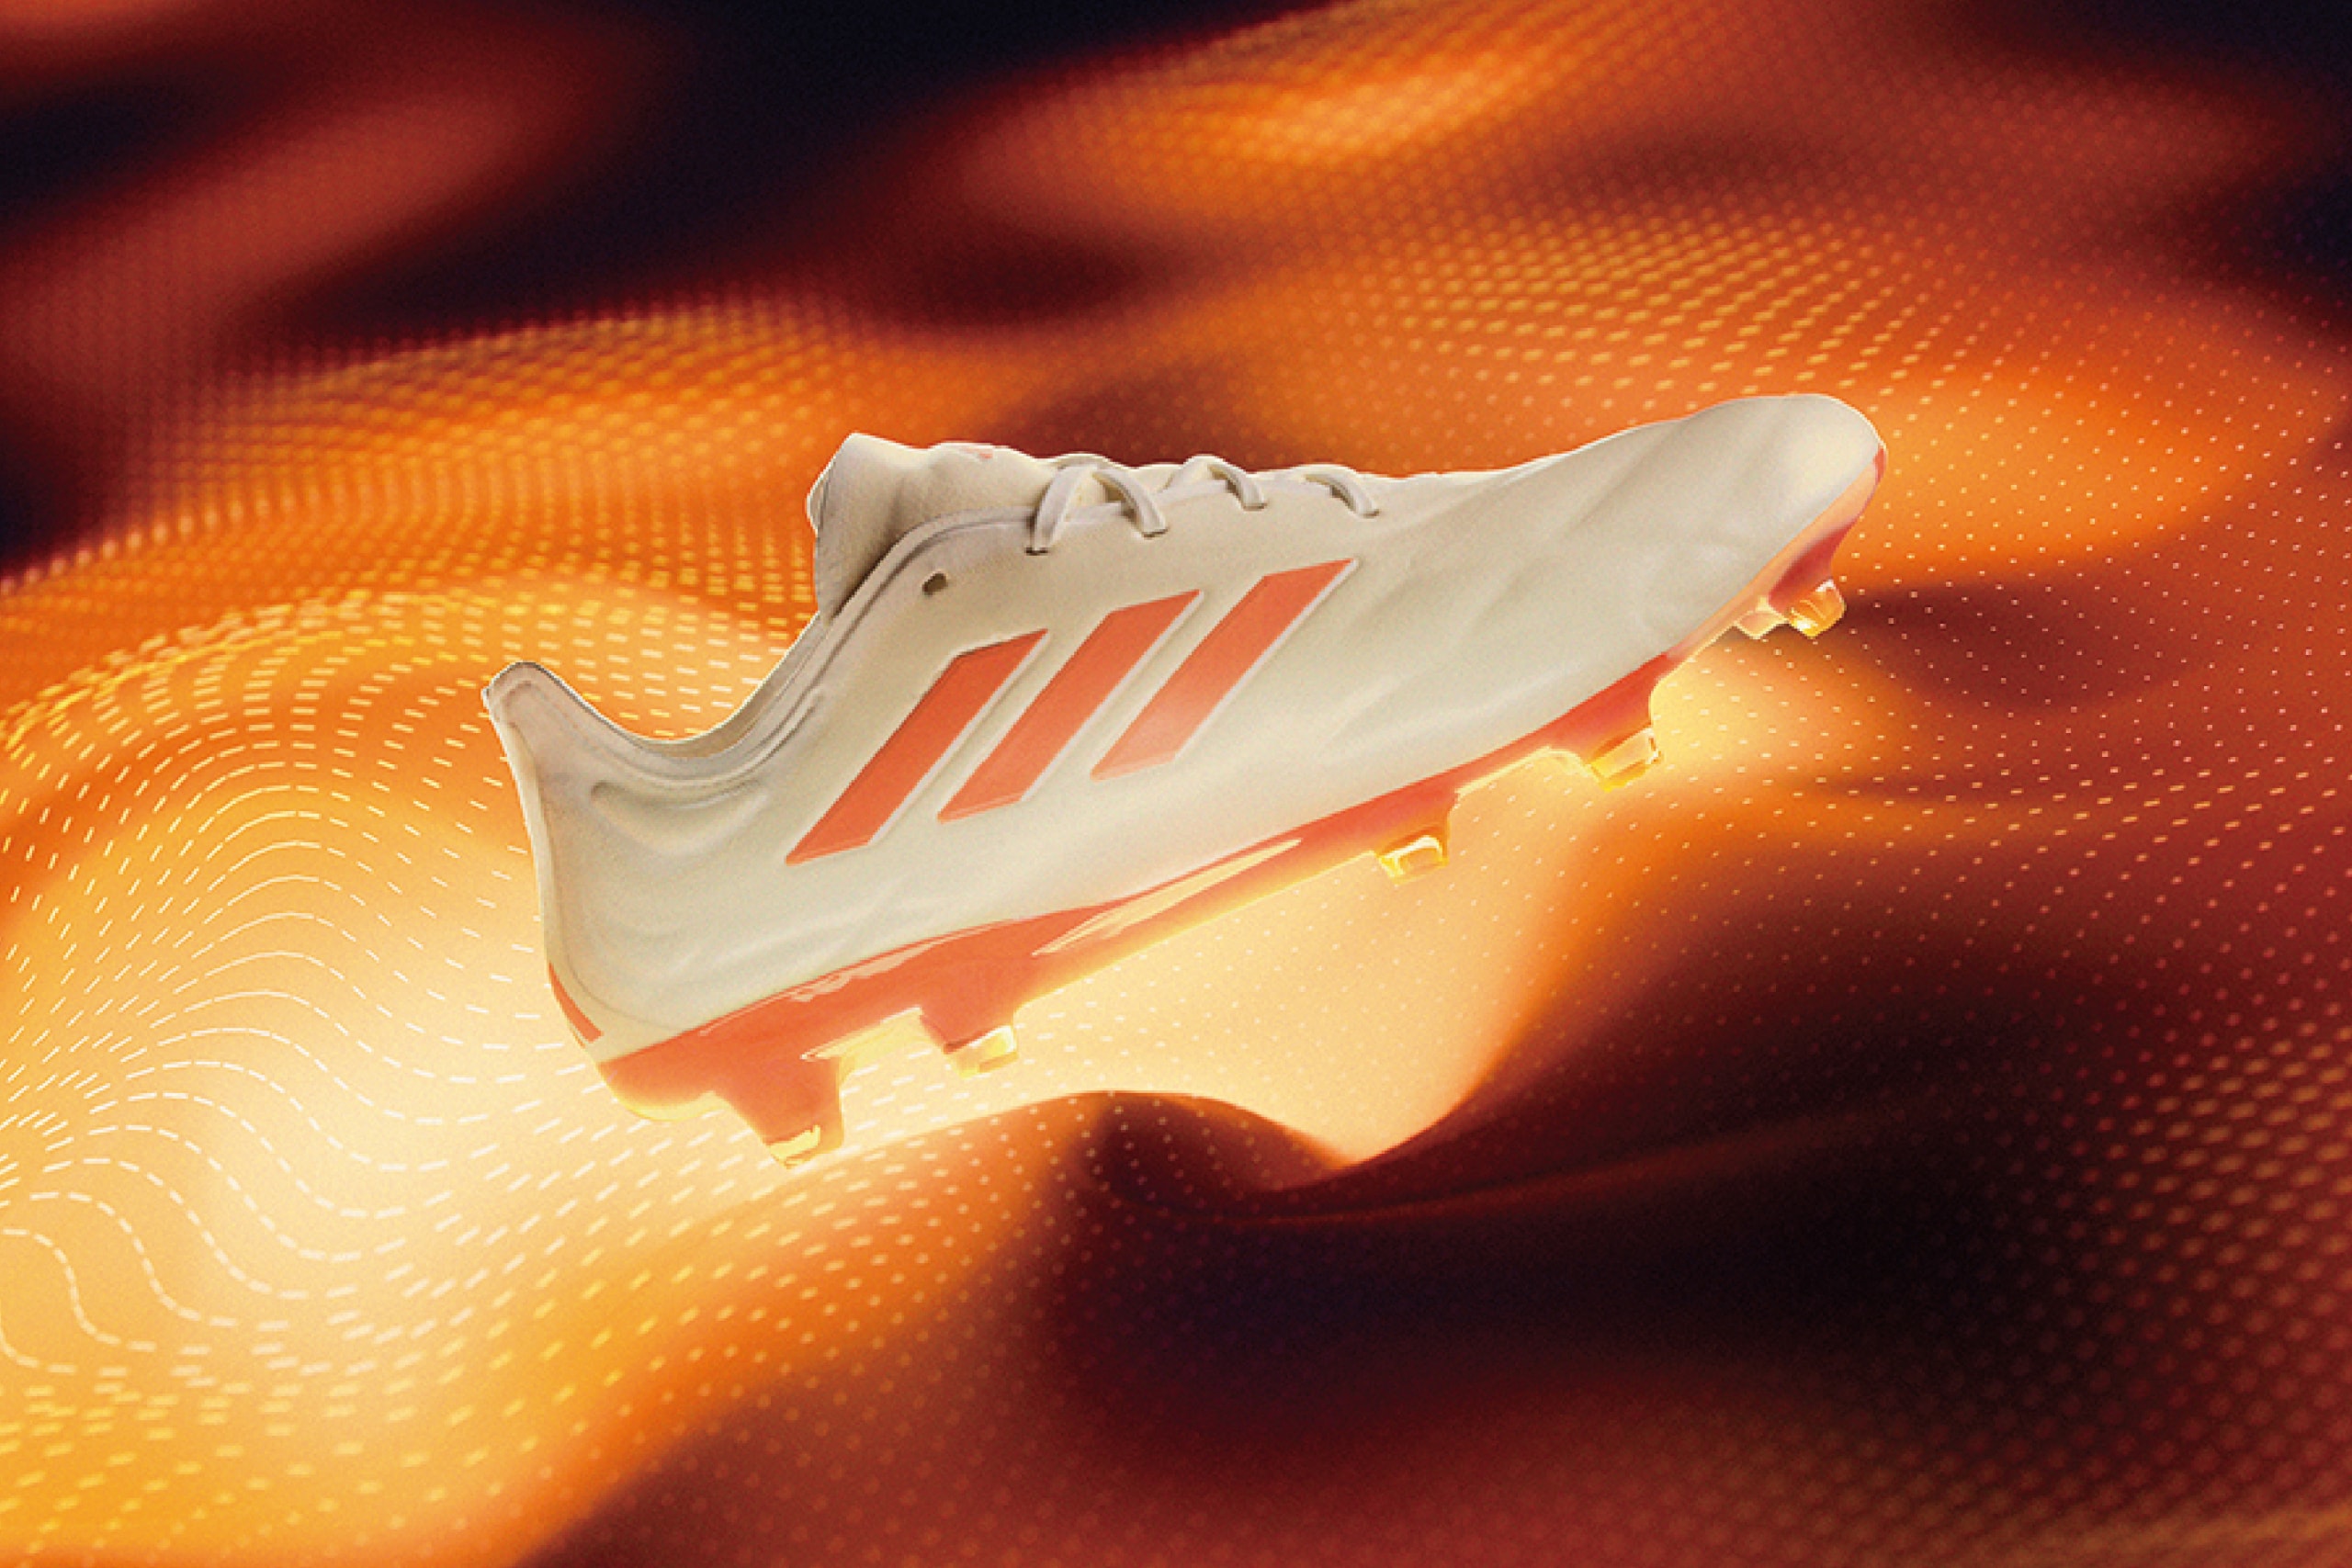 adidas 推出全新「赤焰」足球鞋套装